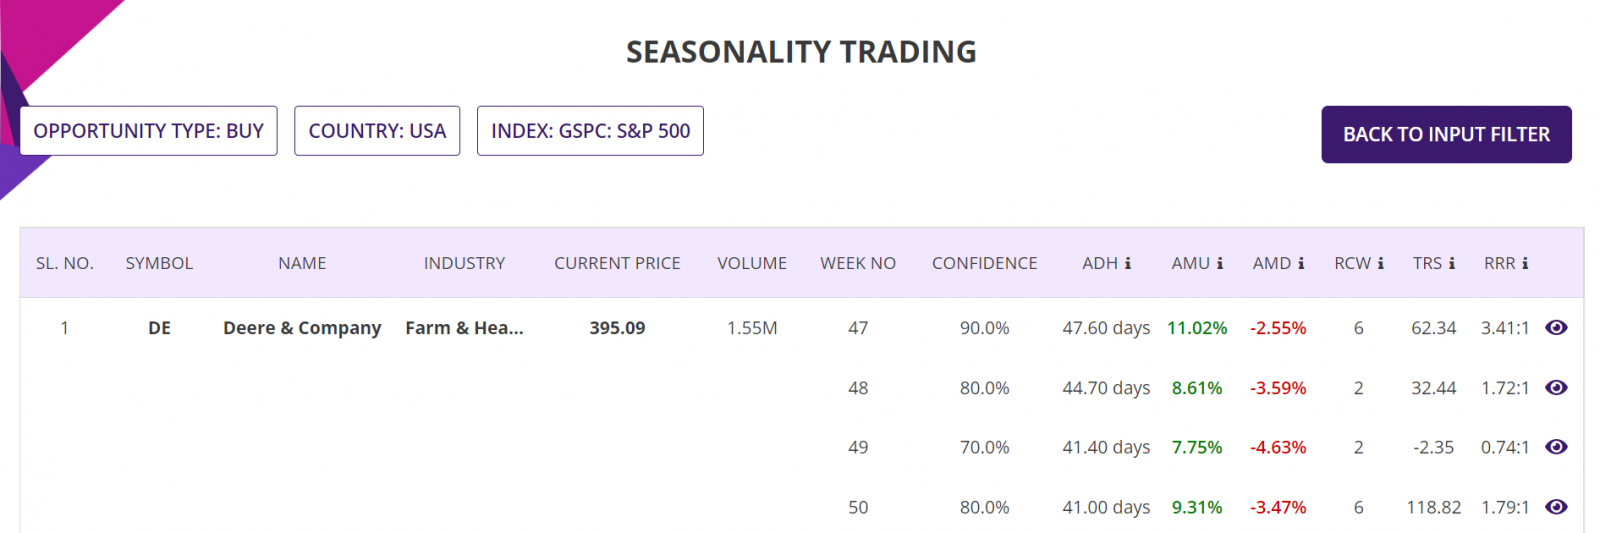 Seasonality trading strategy, summary report, S&P500 Stock